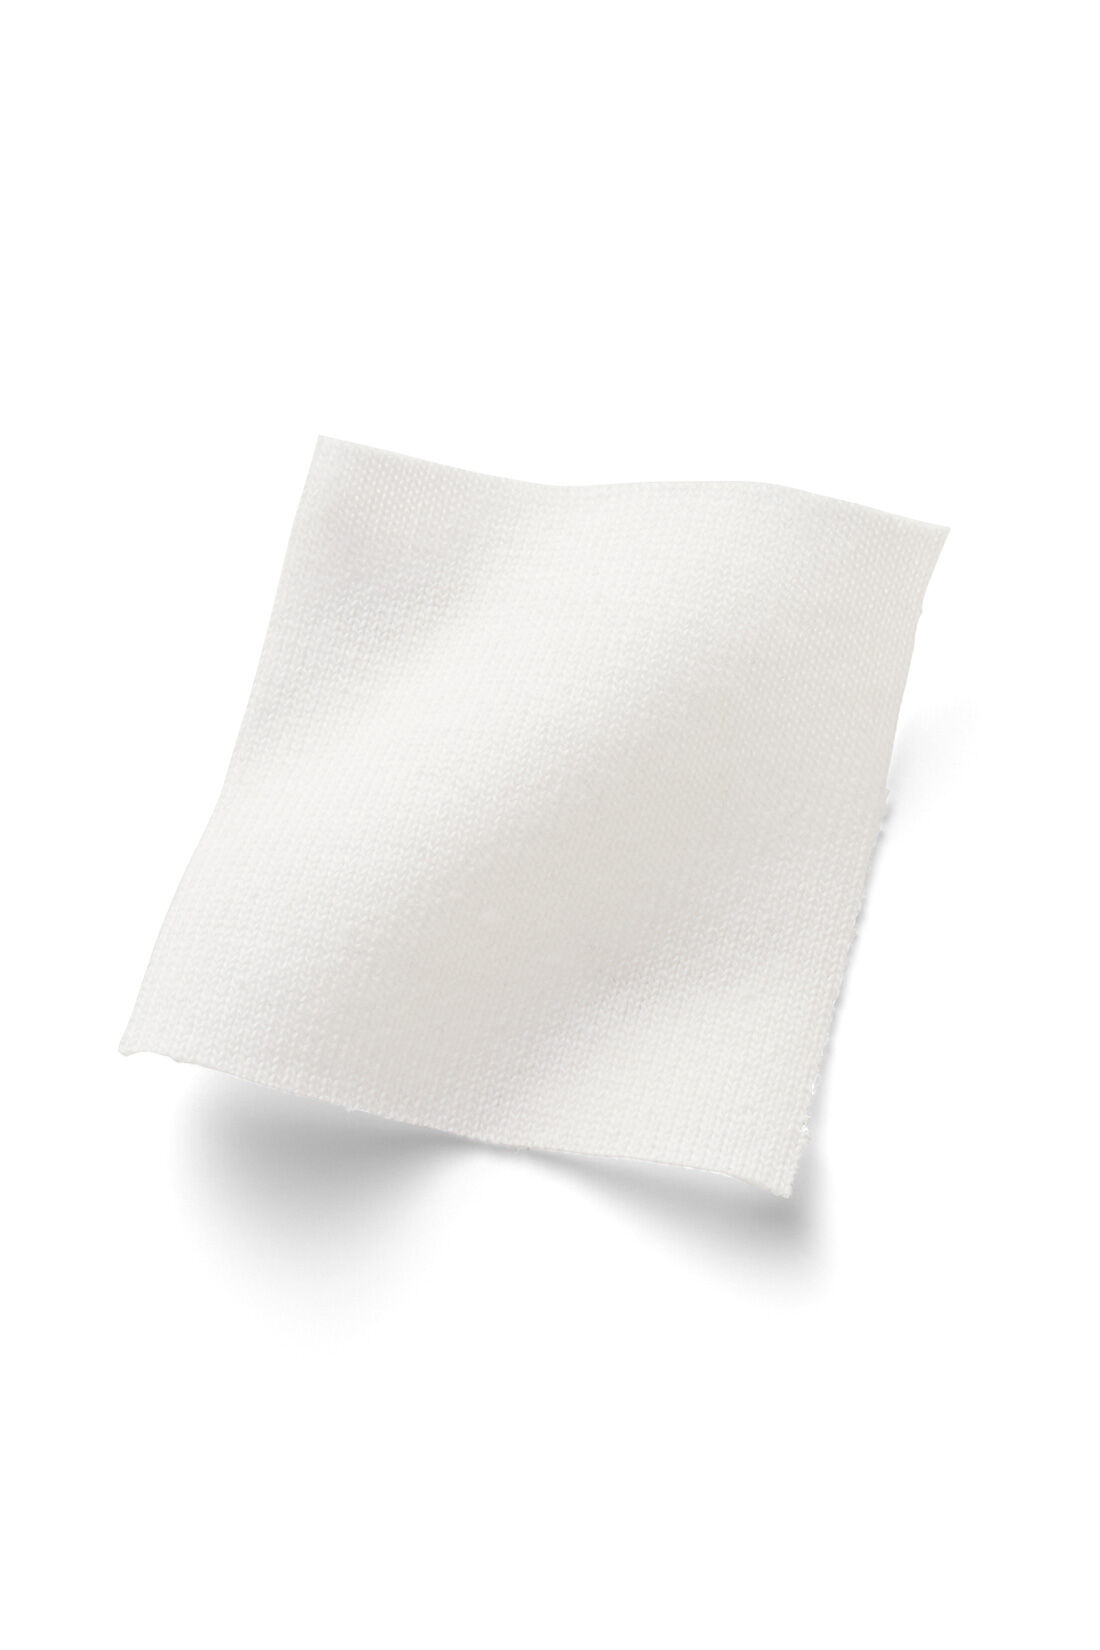 IEDIT|IEDIT[イディット]　福田麻琴さんコラボ 大人が一枚で着こなしやすいロングTシャツ〈オフホワイト〉|ドライタッチで、適度な張り感と厚みのある綿混カットソー素材。